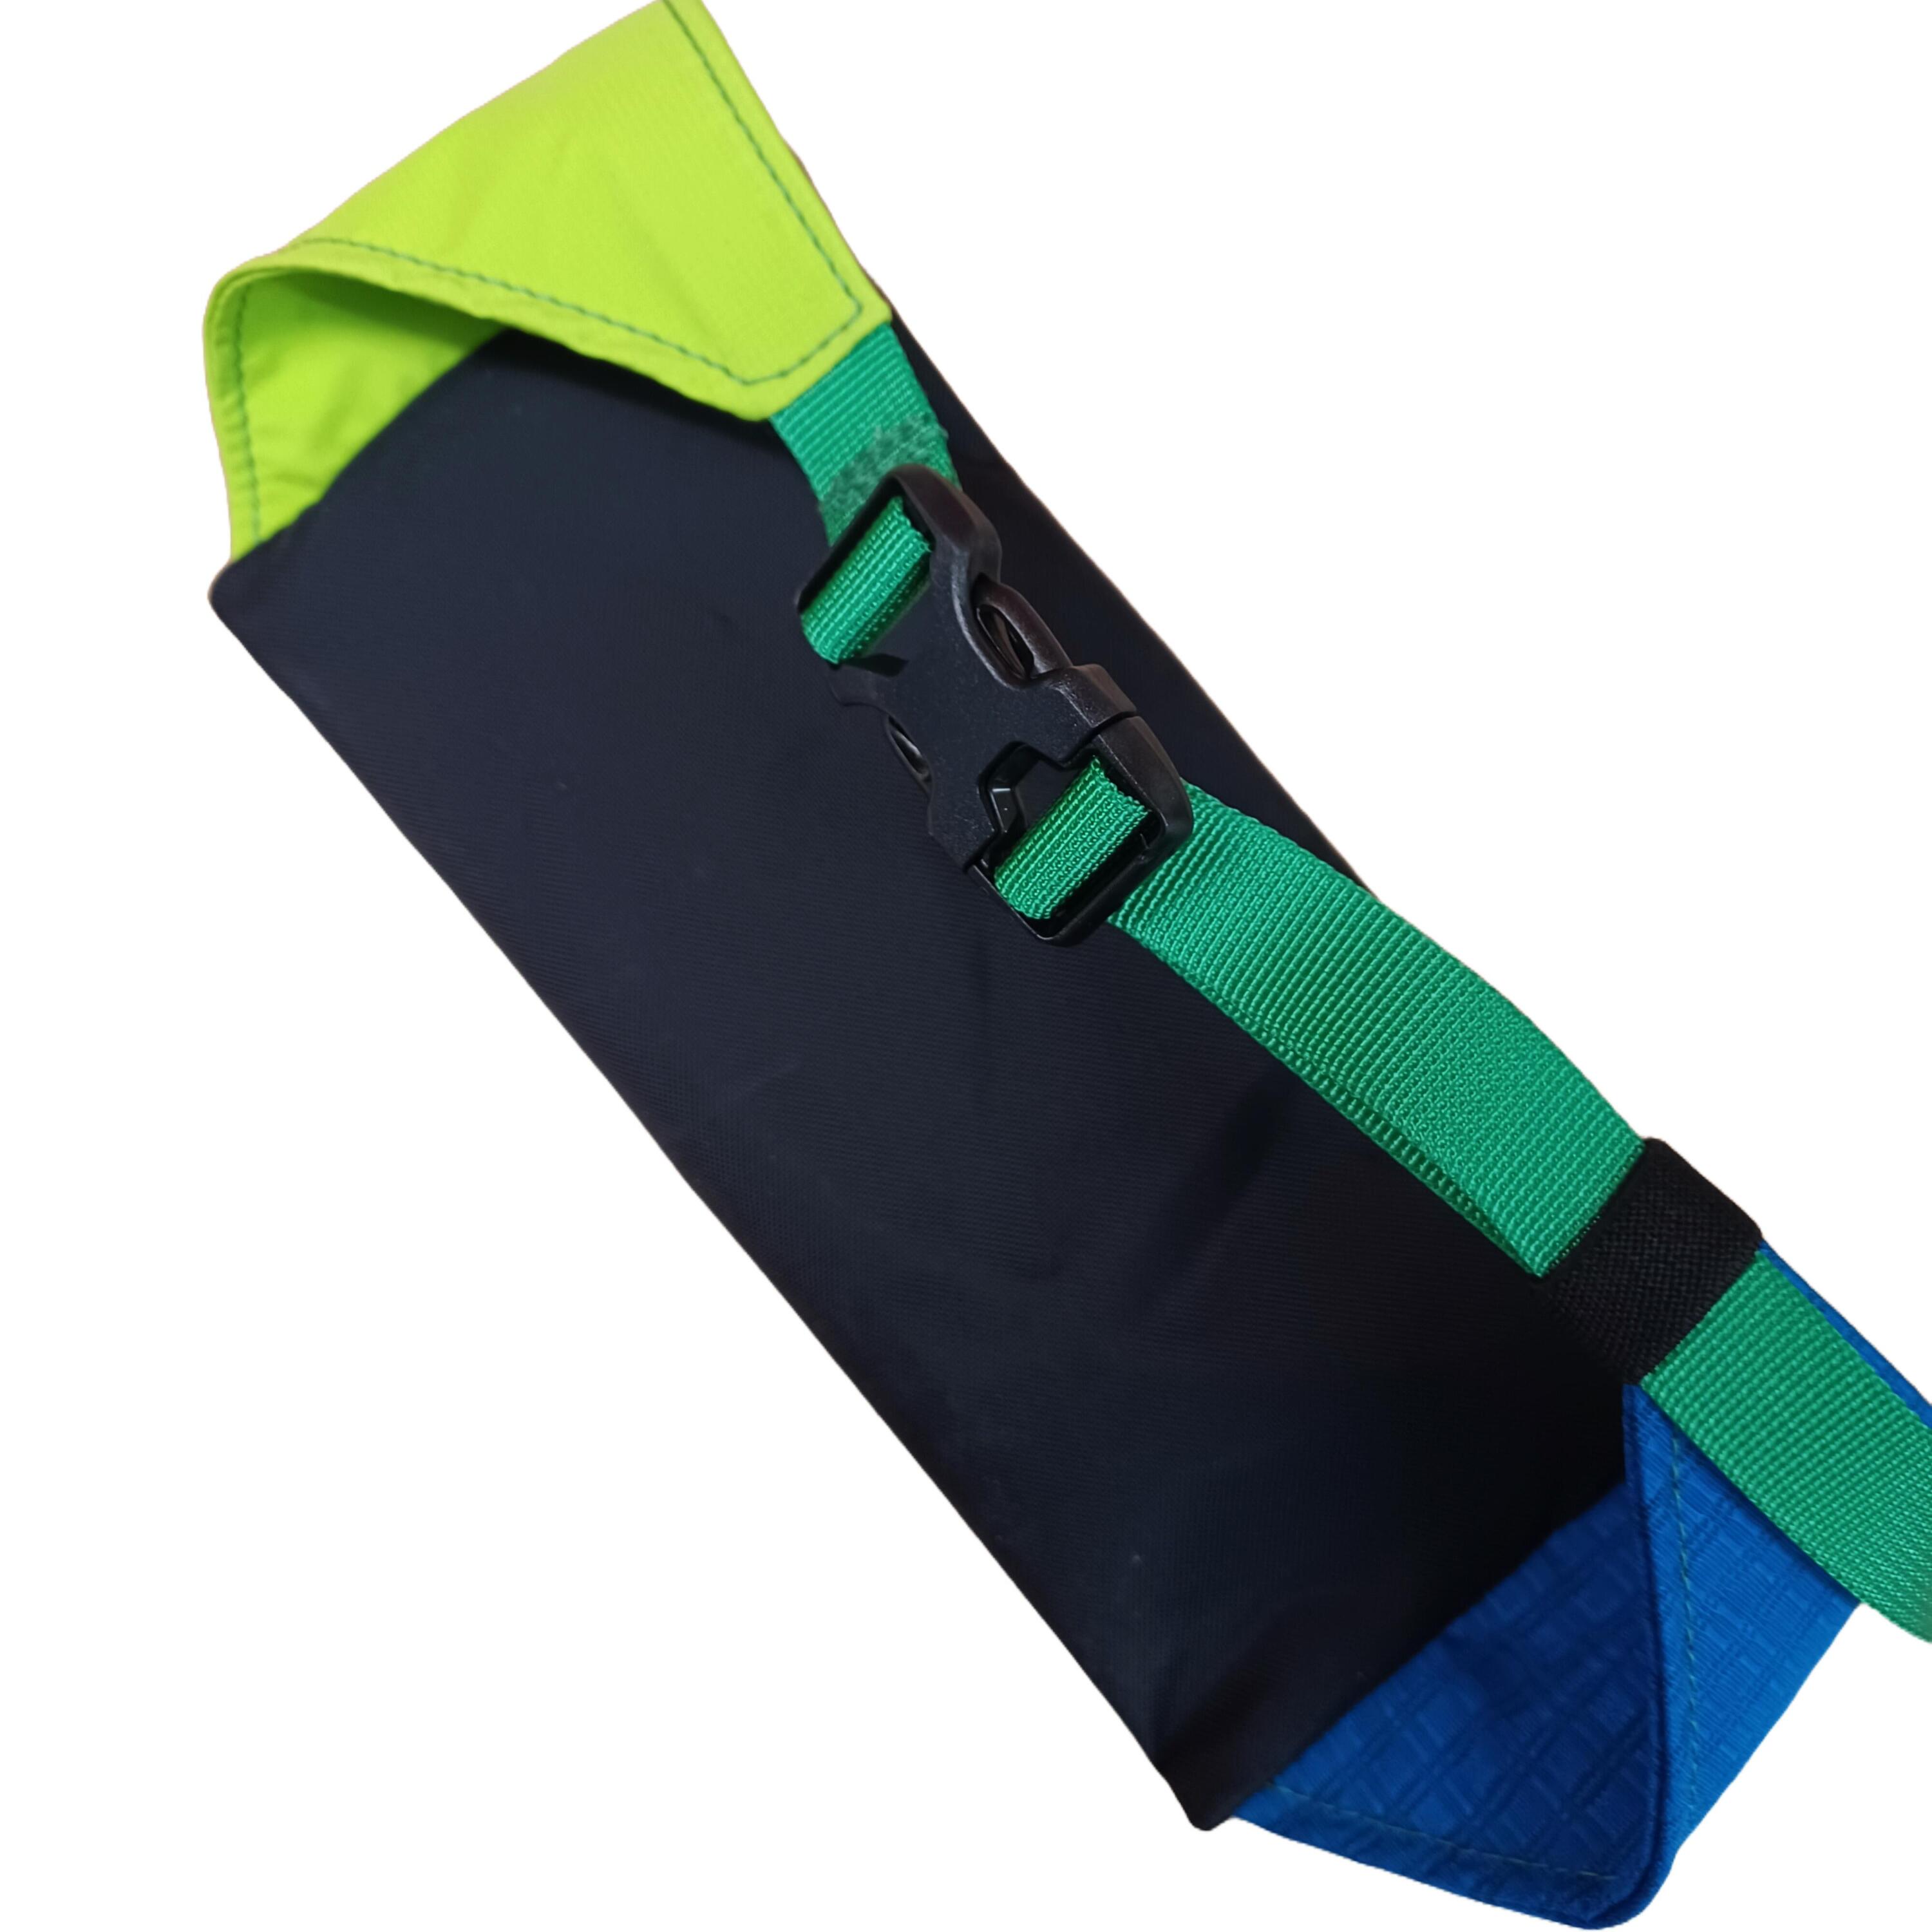 Lightweight bum bag / running belt made using upcycled fabrics. 2/3